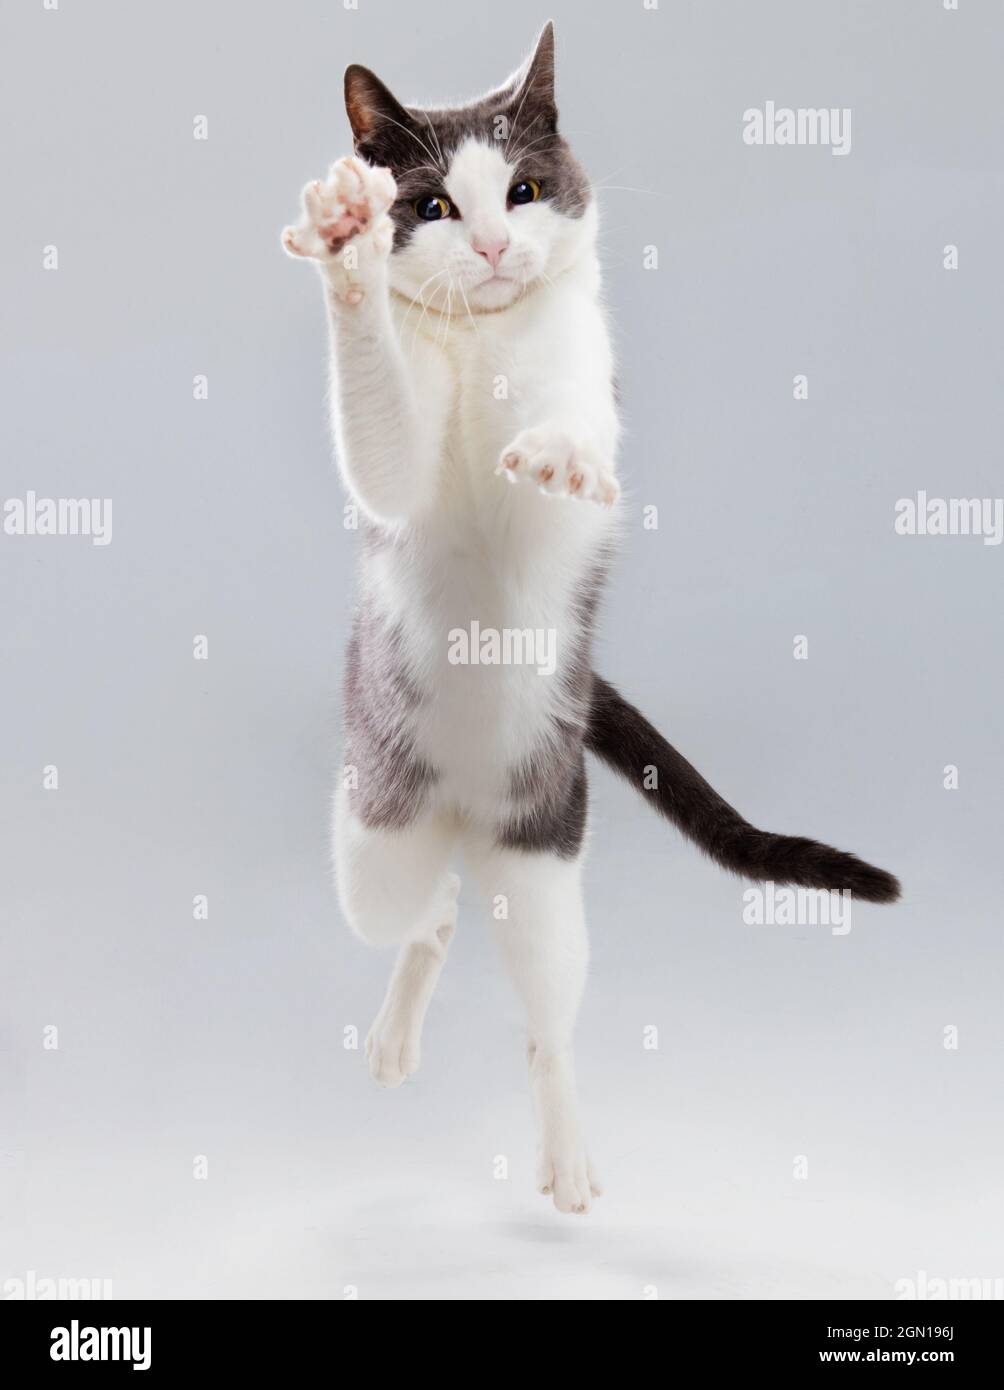 Photo studio d'un chat gris et blanc tombant vers l'appareil photo avec une expression concentrée. Banque D'Images